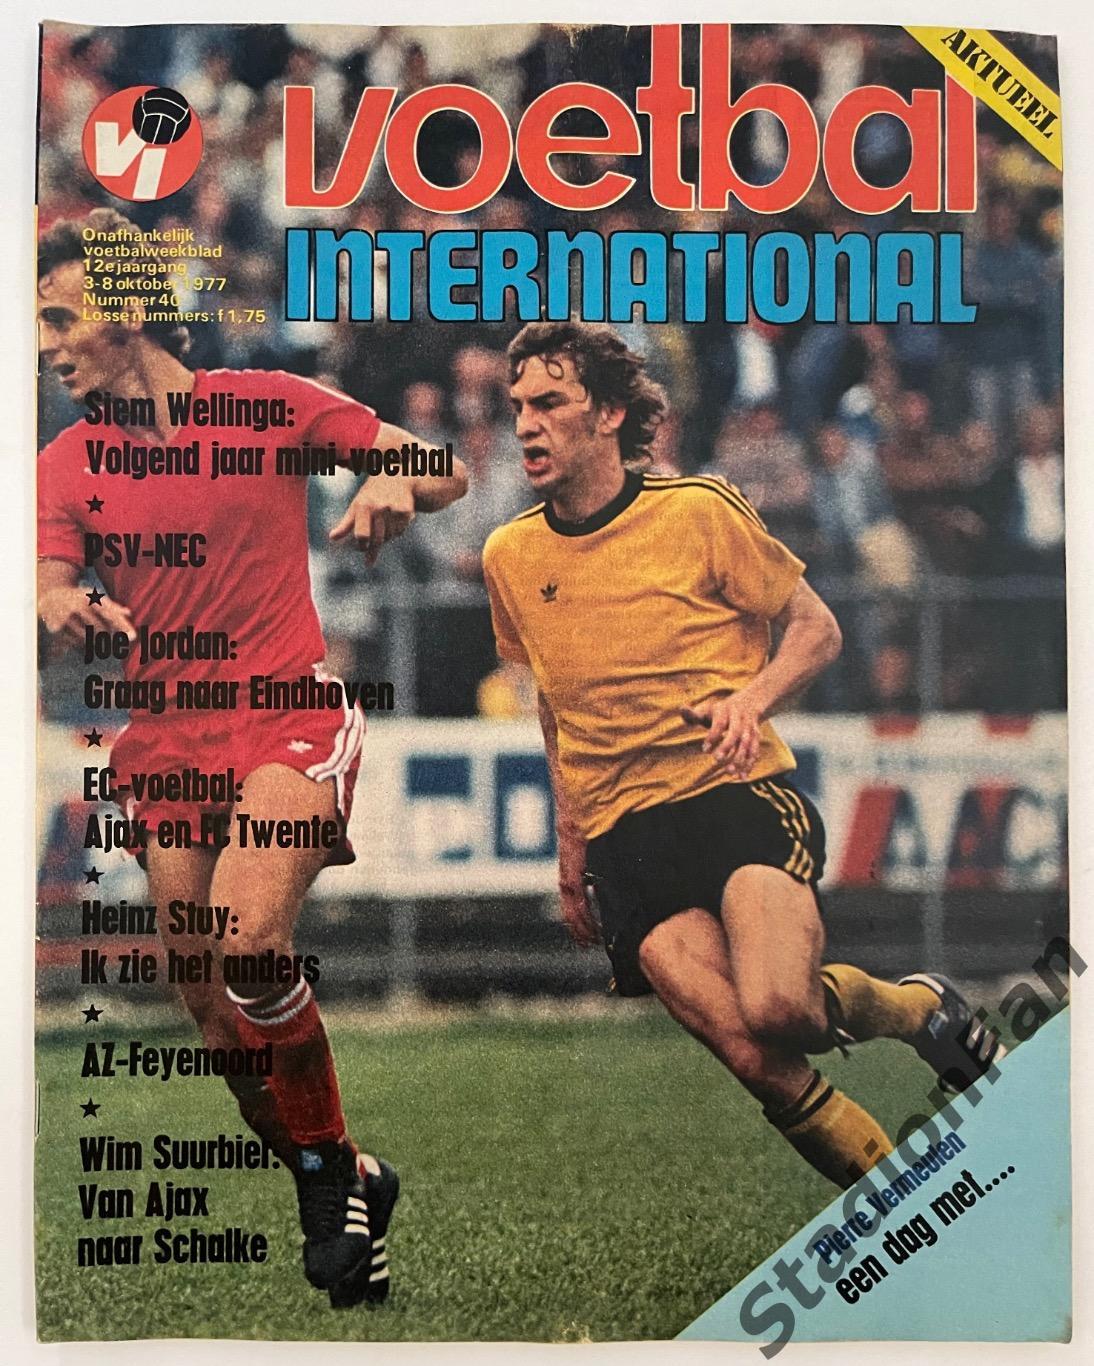 Журнал Voetbal nr.40 - 1977 год.